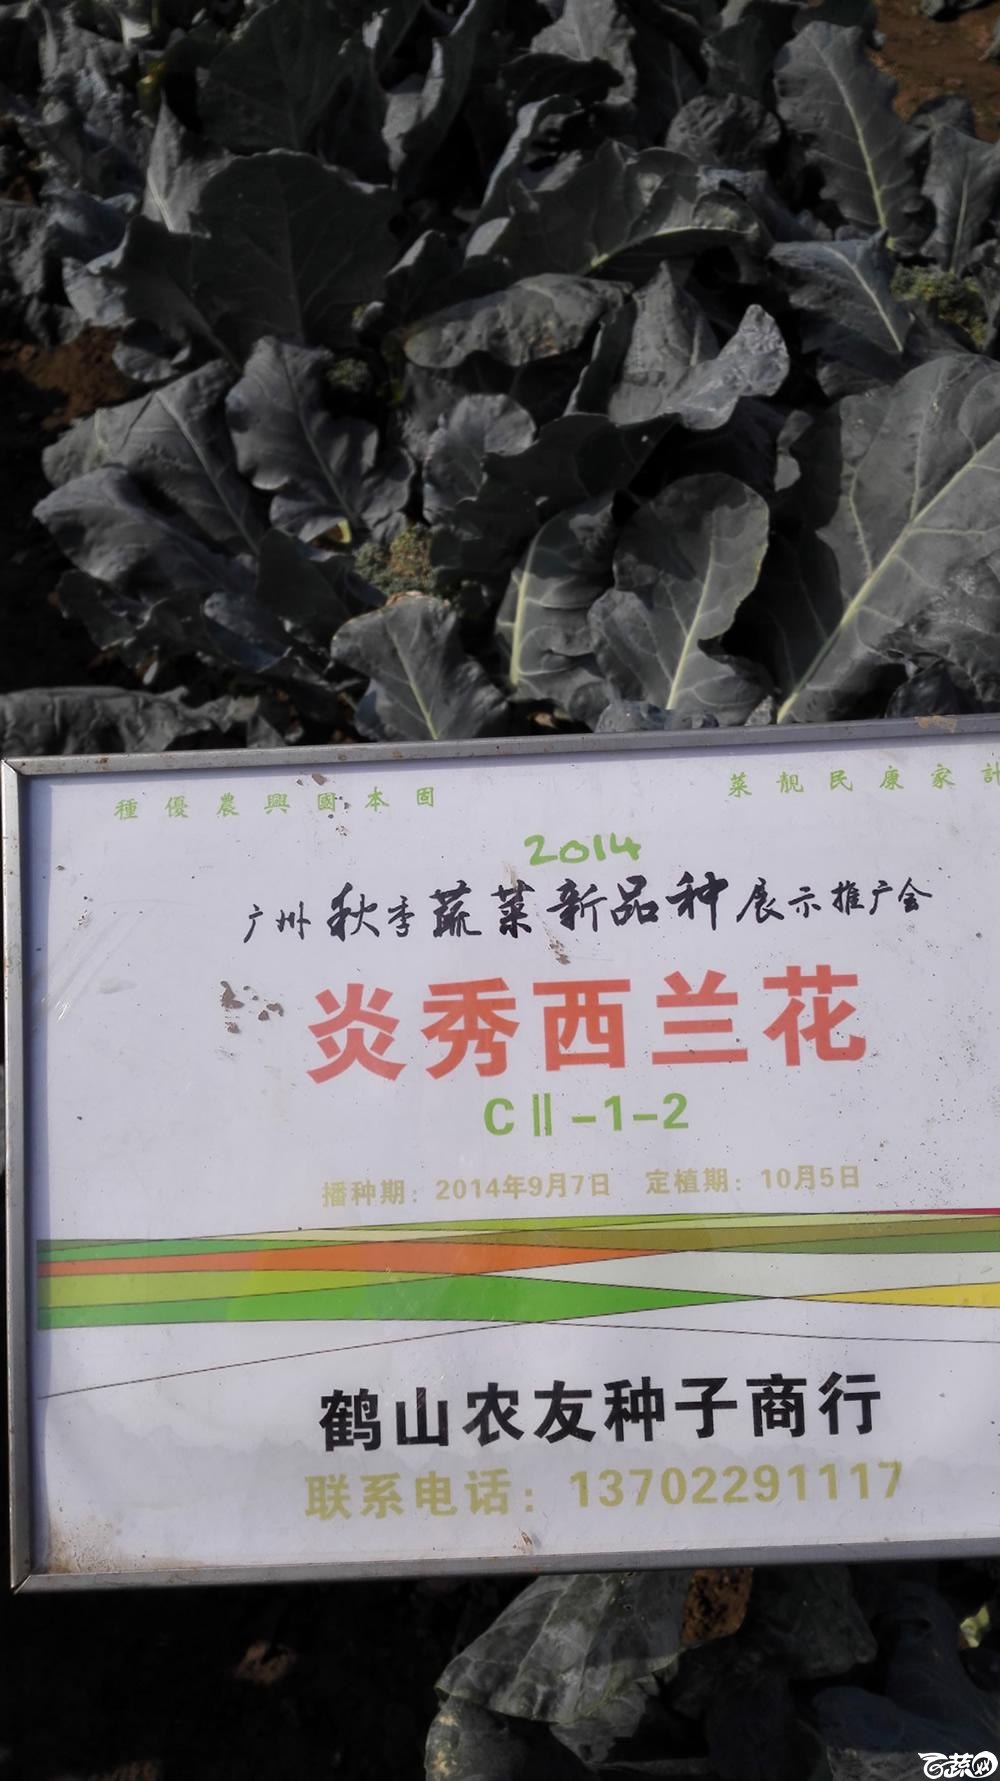 2014年12月10号广州市农科院南沙秋季蔬菜新品种展示会 甘蓝_017.jpg